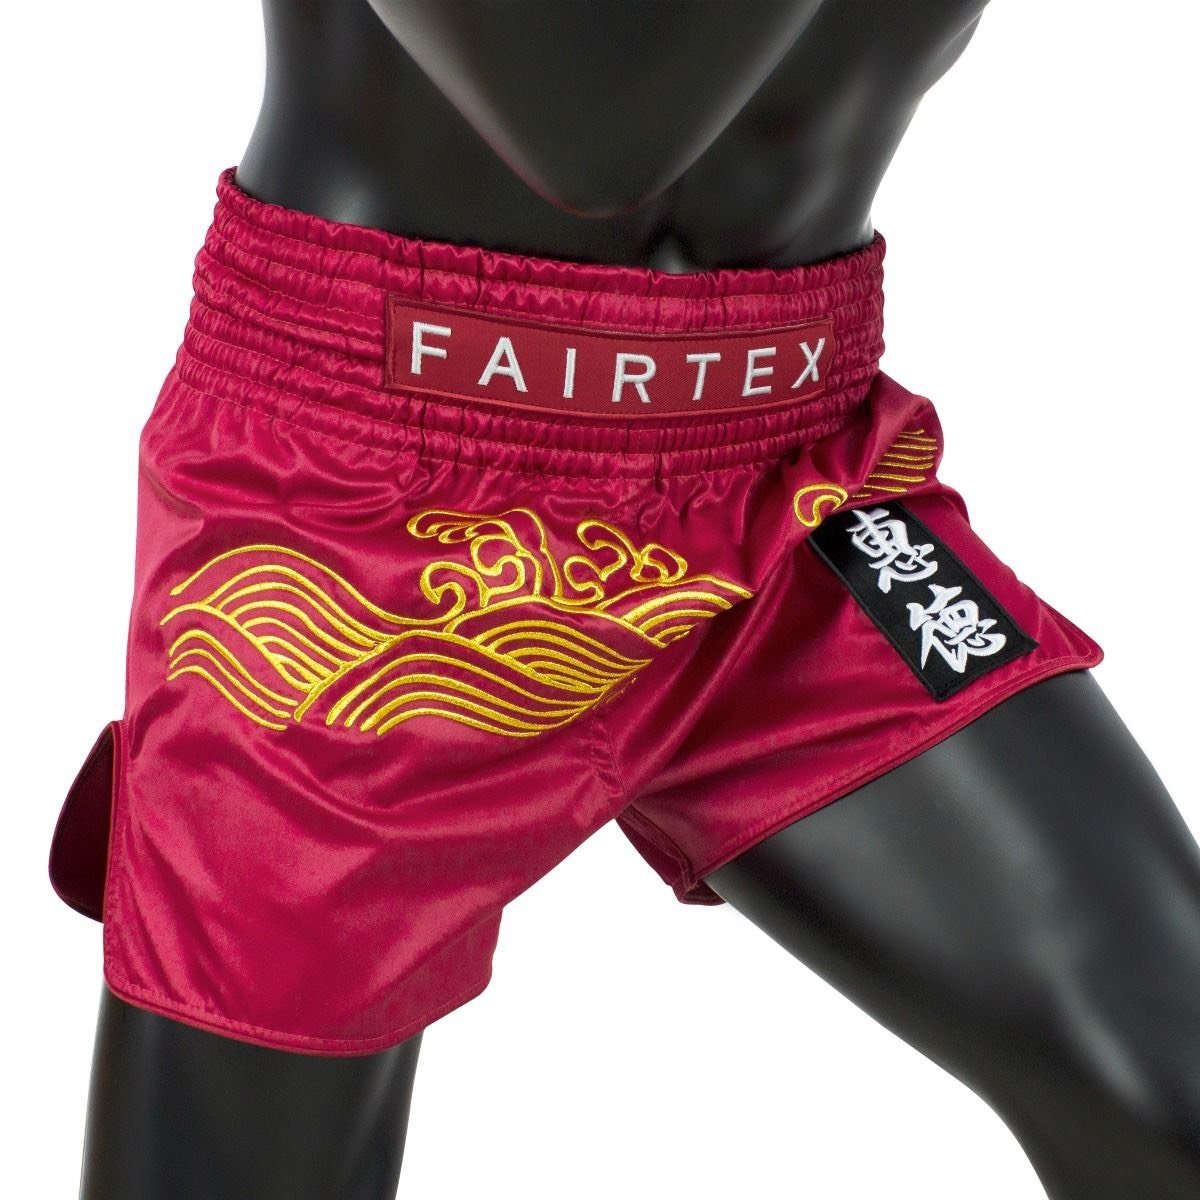 Fairtex Shorts BS1910 Golden River Fairtex